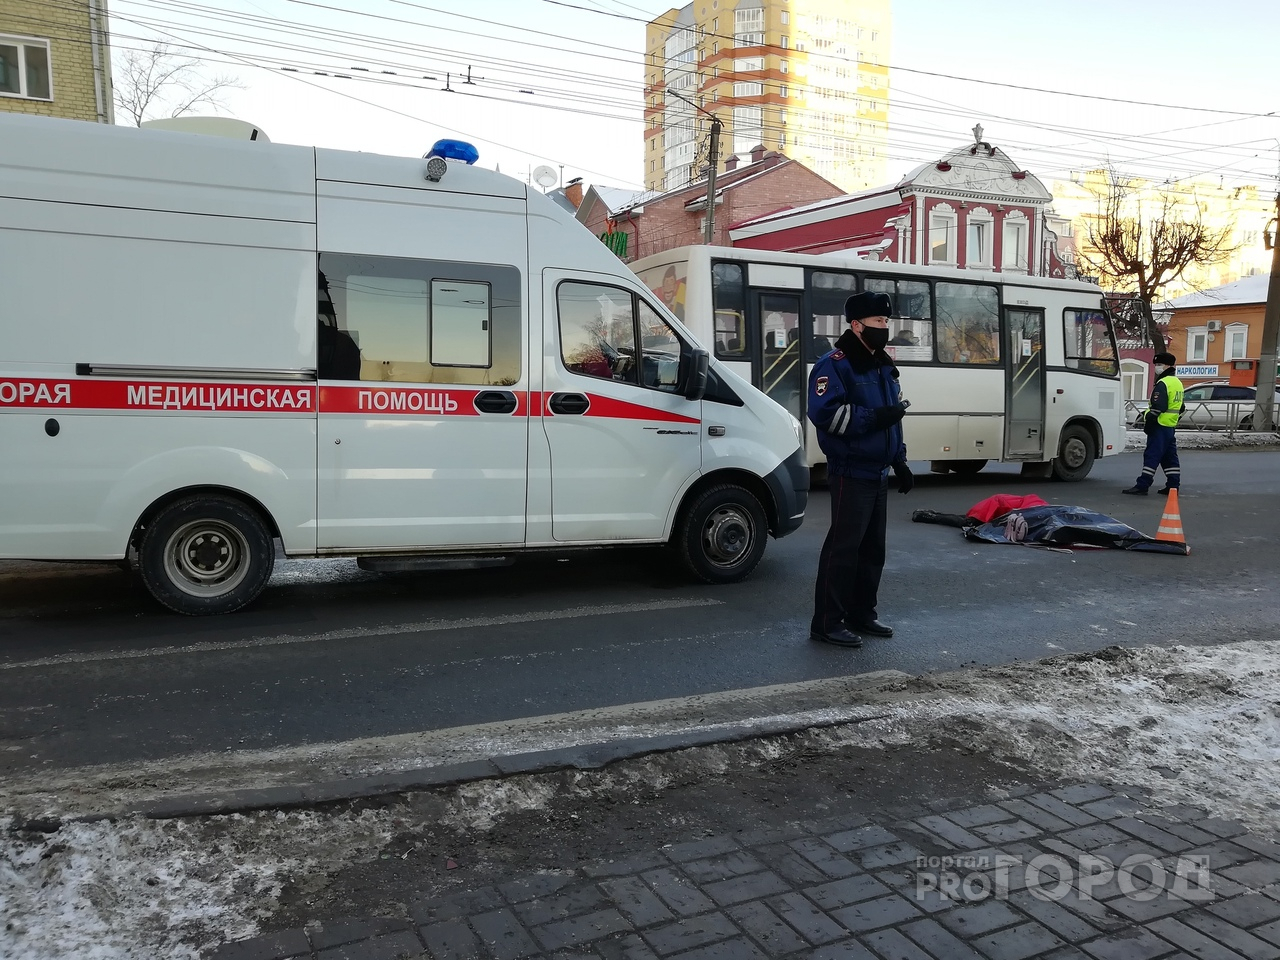 Что обсуждают в Кирове: подробности смертельного ДТП и метеопредупреждение из-за холодов